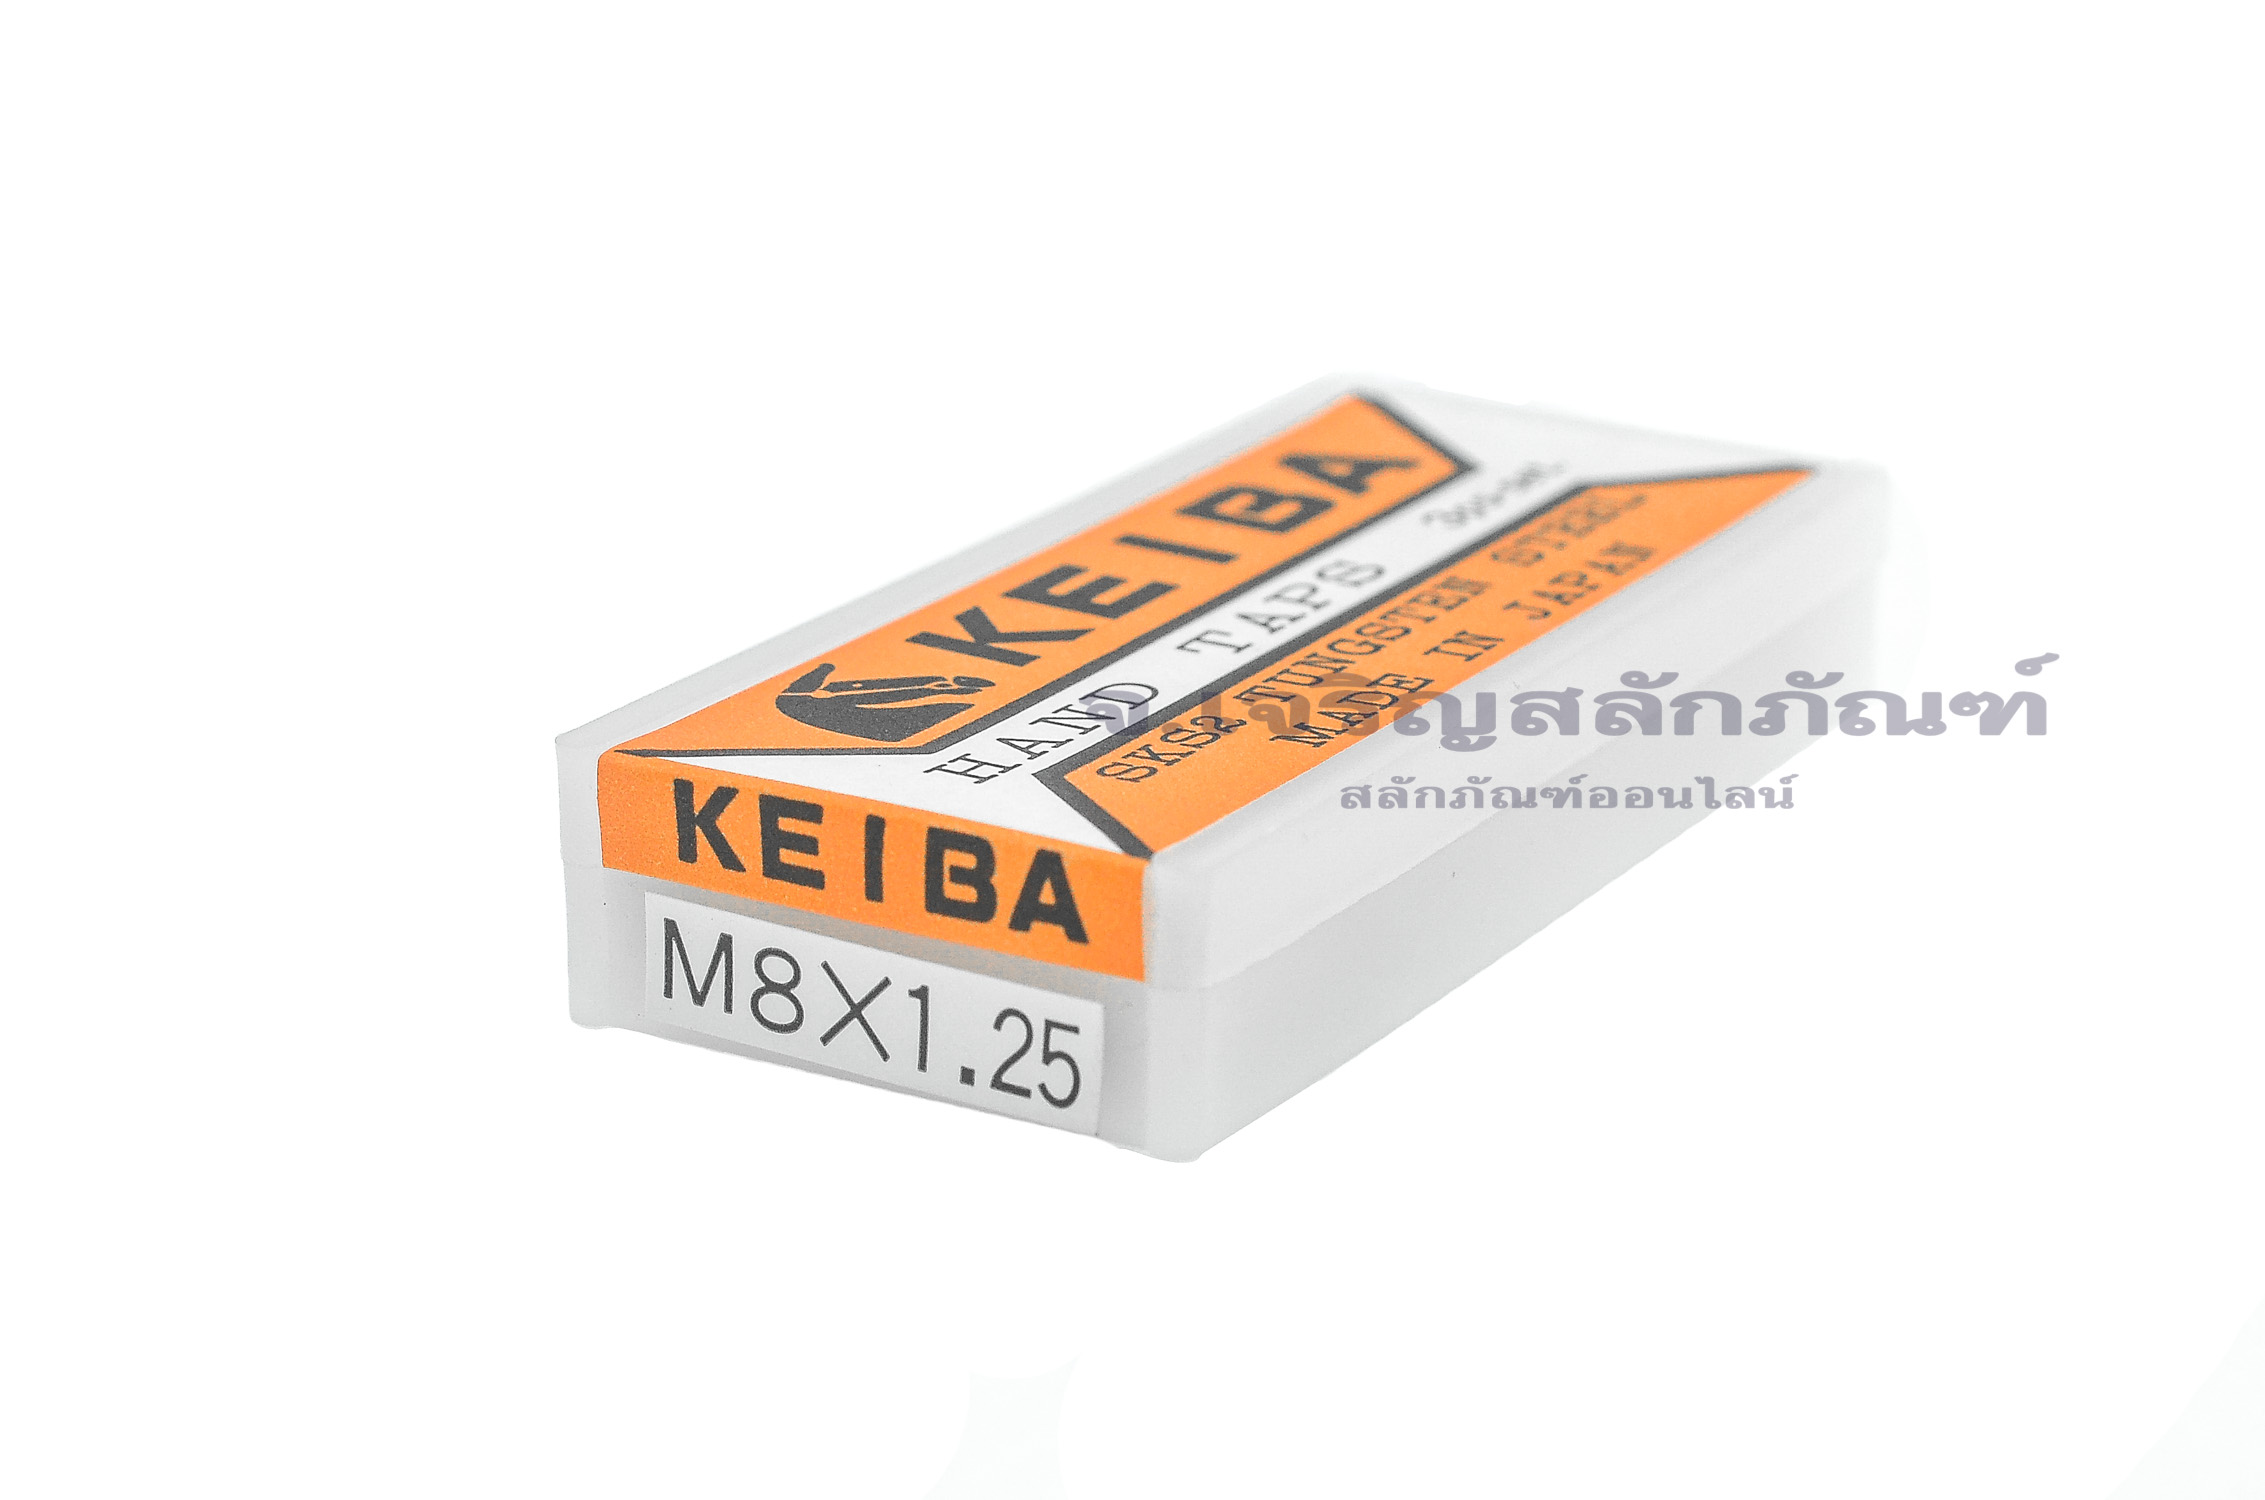 ดอกต๊าปเกลียว 3 ตัวชุด KEIBA M8x1.25